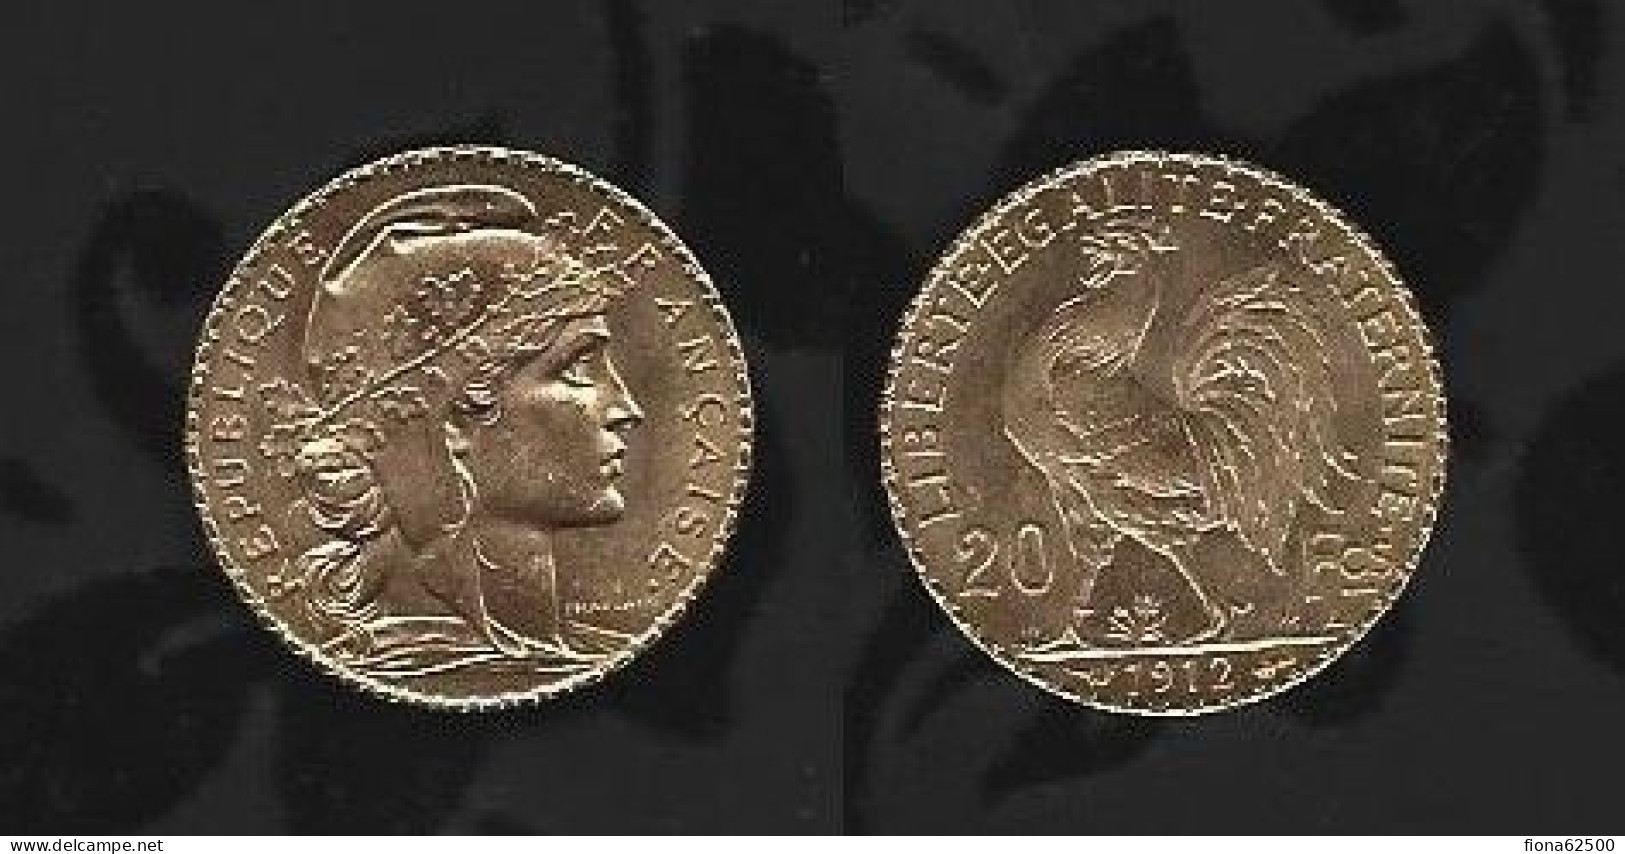 20 FRANCS OR TYPE MARIANNE . 1912. - 20 Francs (gold)